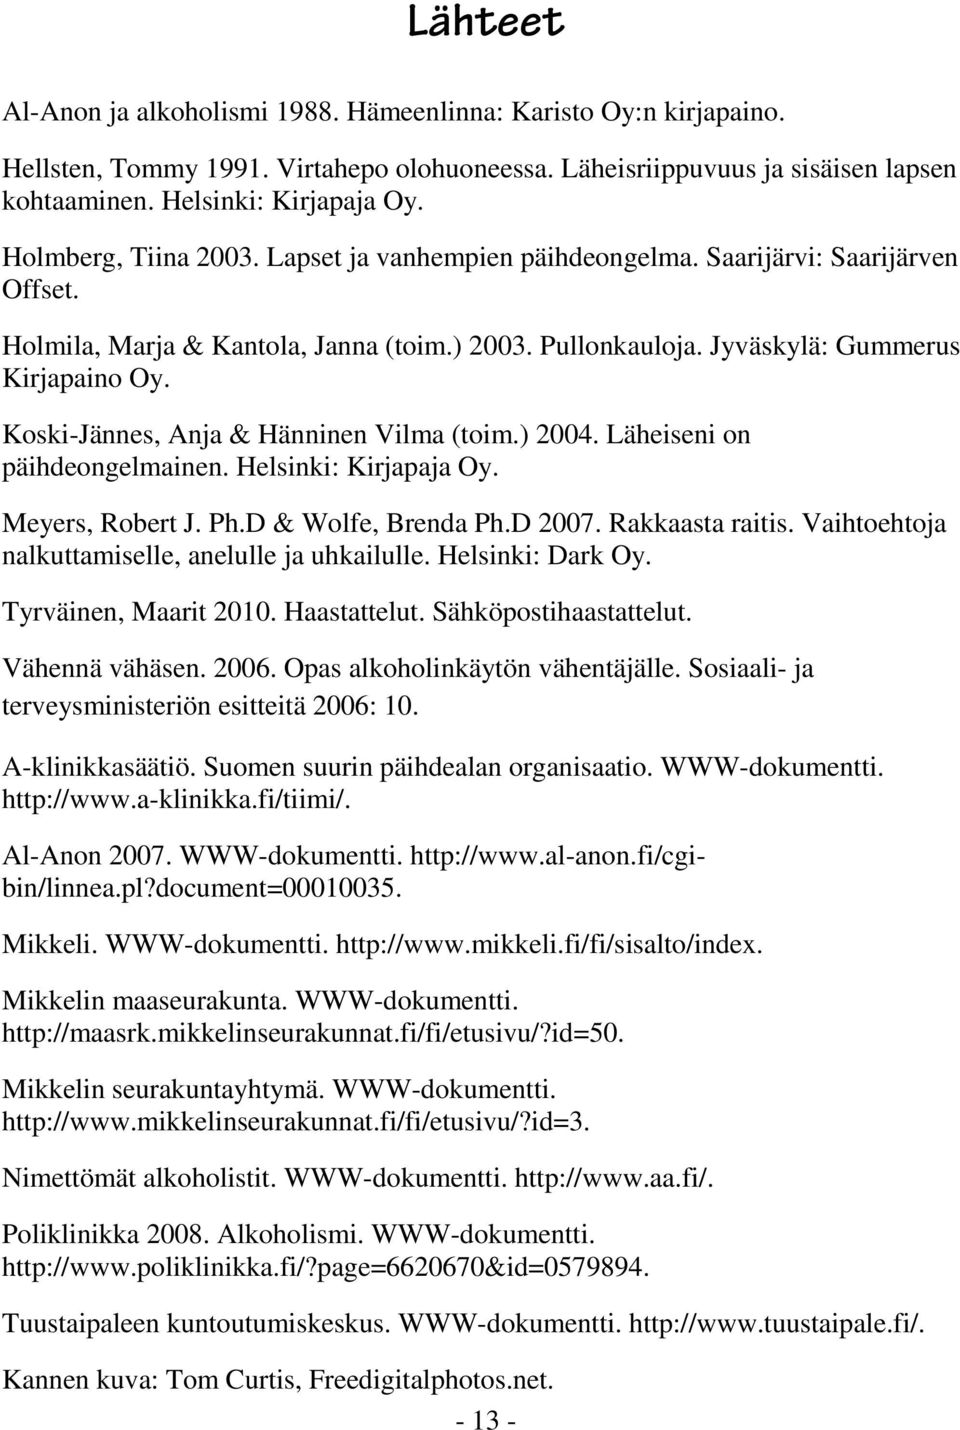 Koski-Jännes, Anja & Hänninen Vilma (toim.) 2004. Läheiseni on päihdeongelmainen. Helsinki: Kirjapaja Oy. Meyers, Robert J. Ph.D & Wolfe, Brenda Ph.D 2007. Rakkaasta raitis.